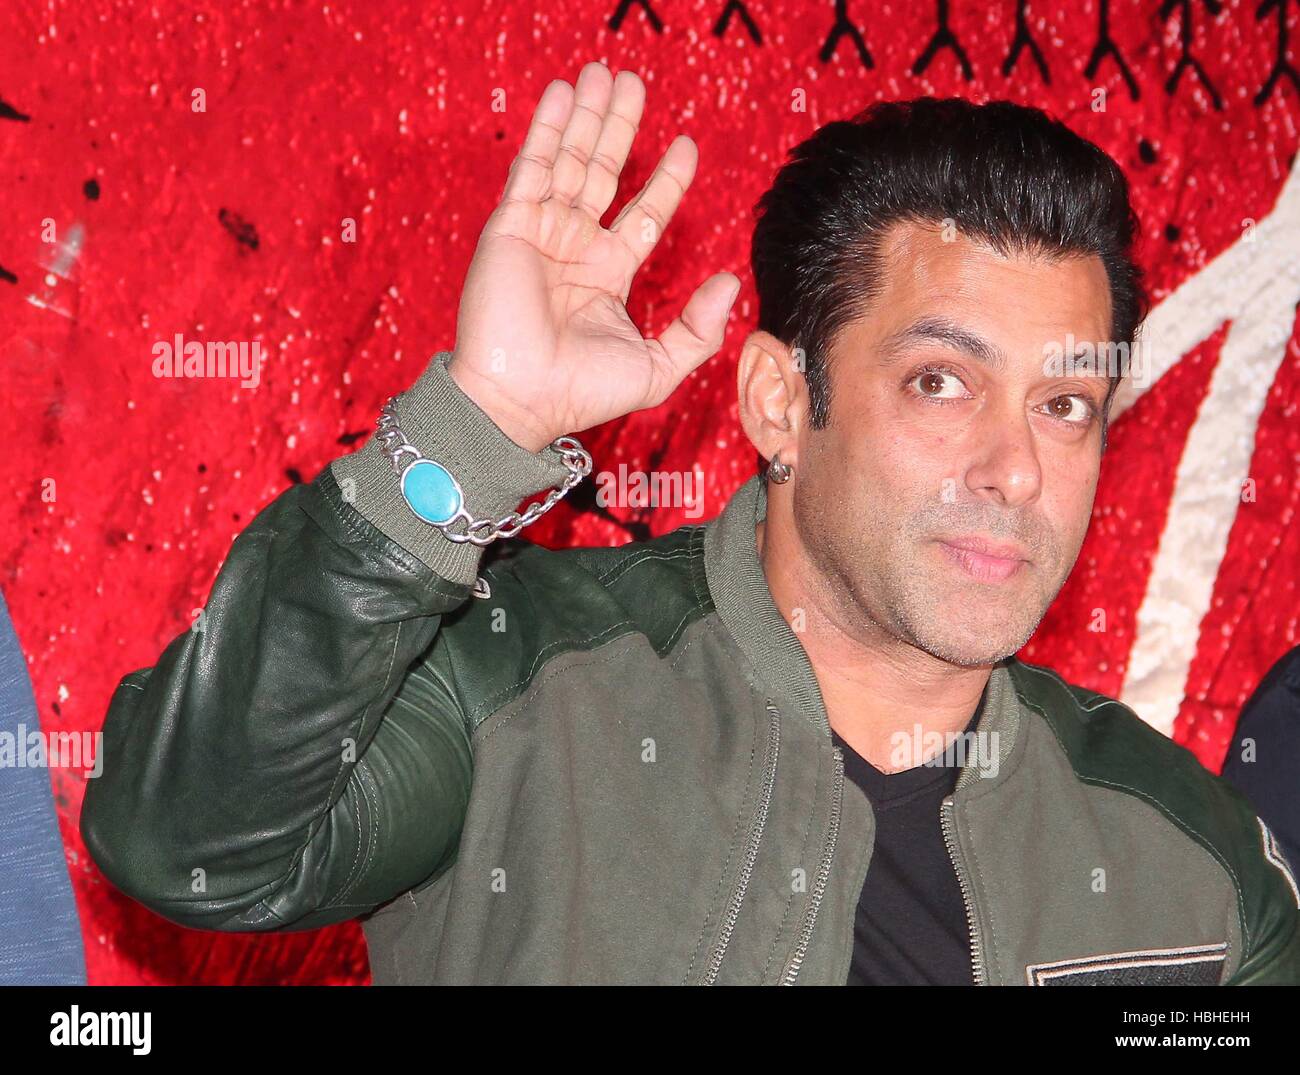 Attore di Bollywood Salman Khan durante il rimorchio teatrale lancio del film jai Ho a Mumbai, in India nel mese di dicembre Foto Stock